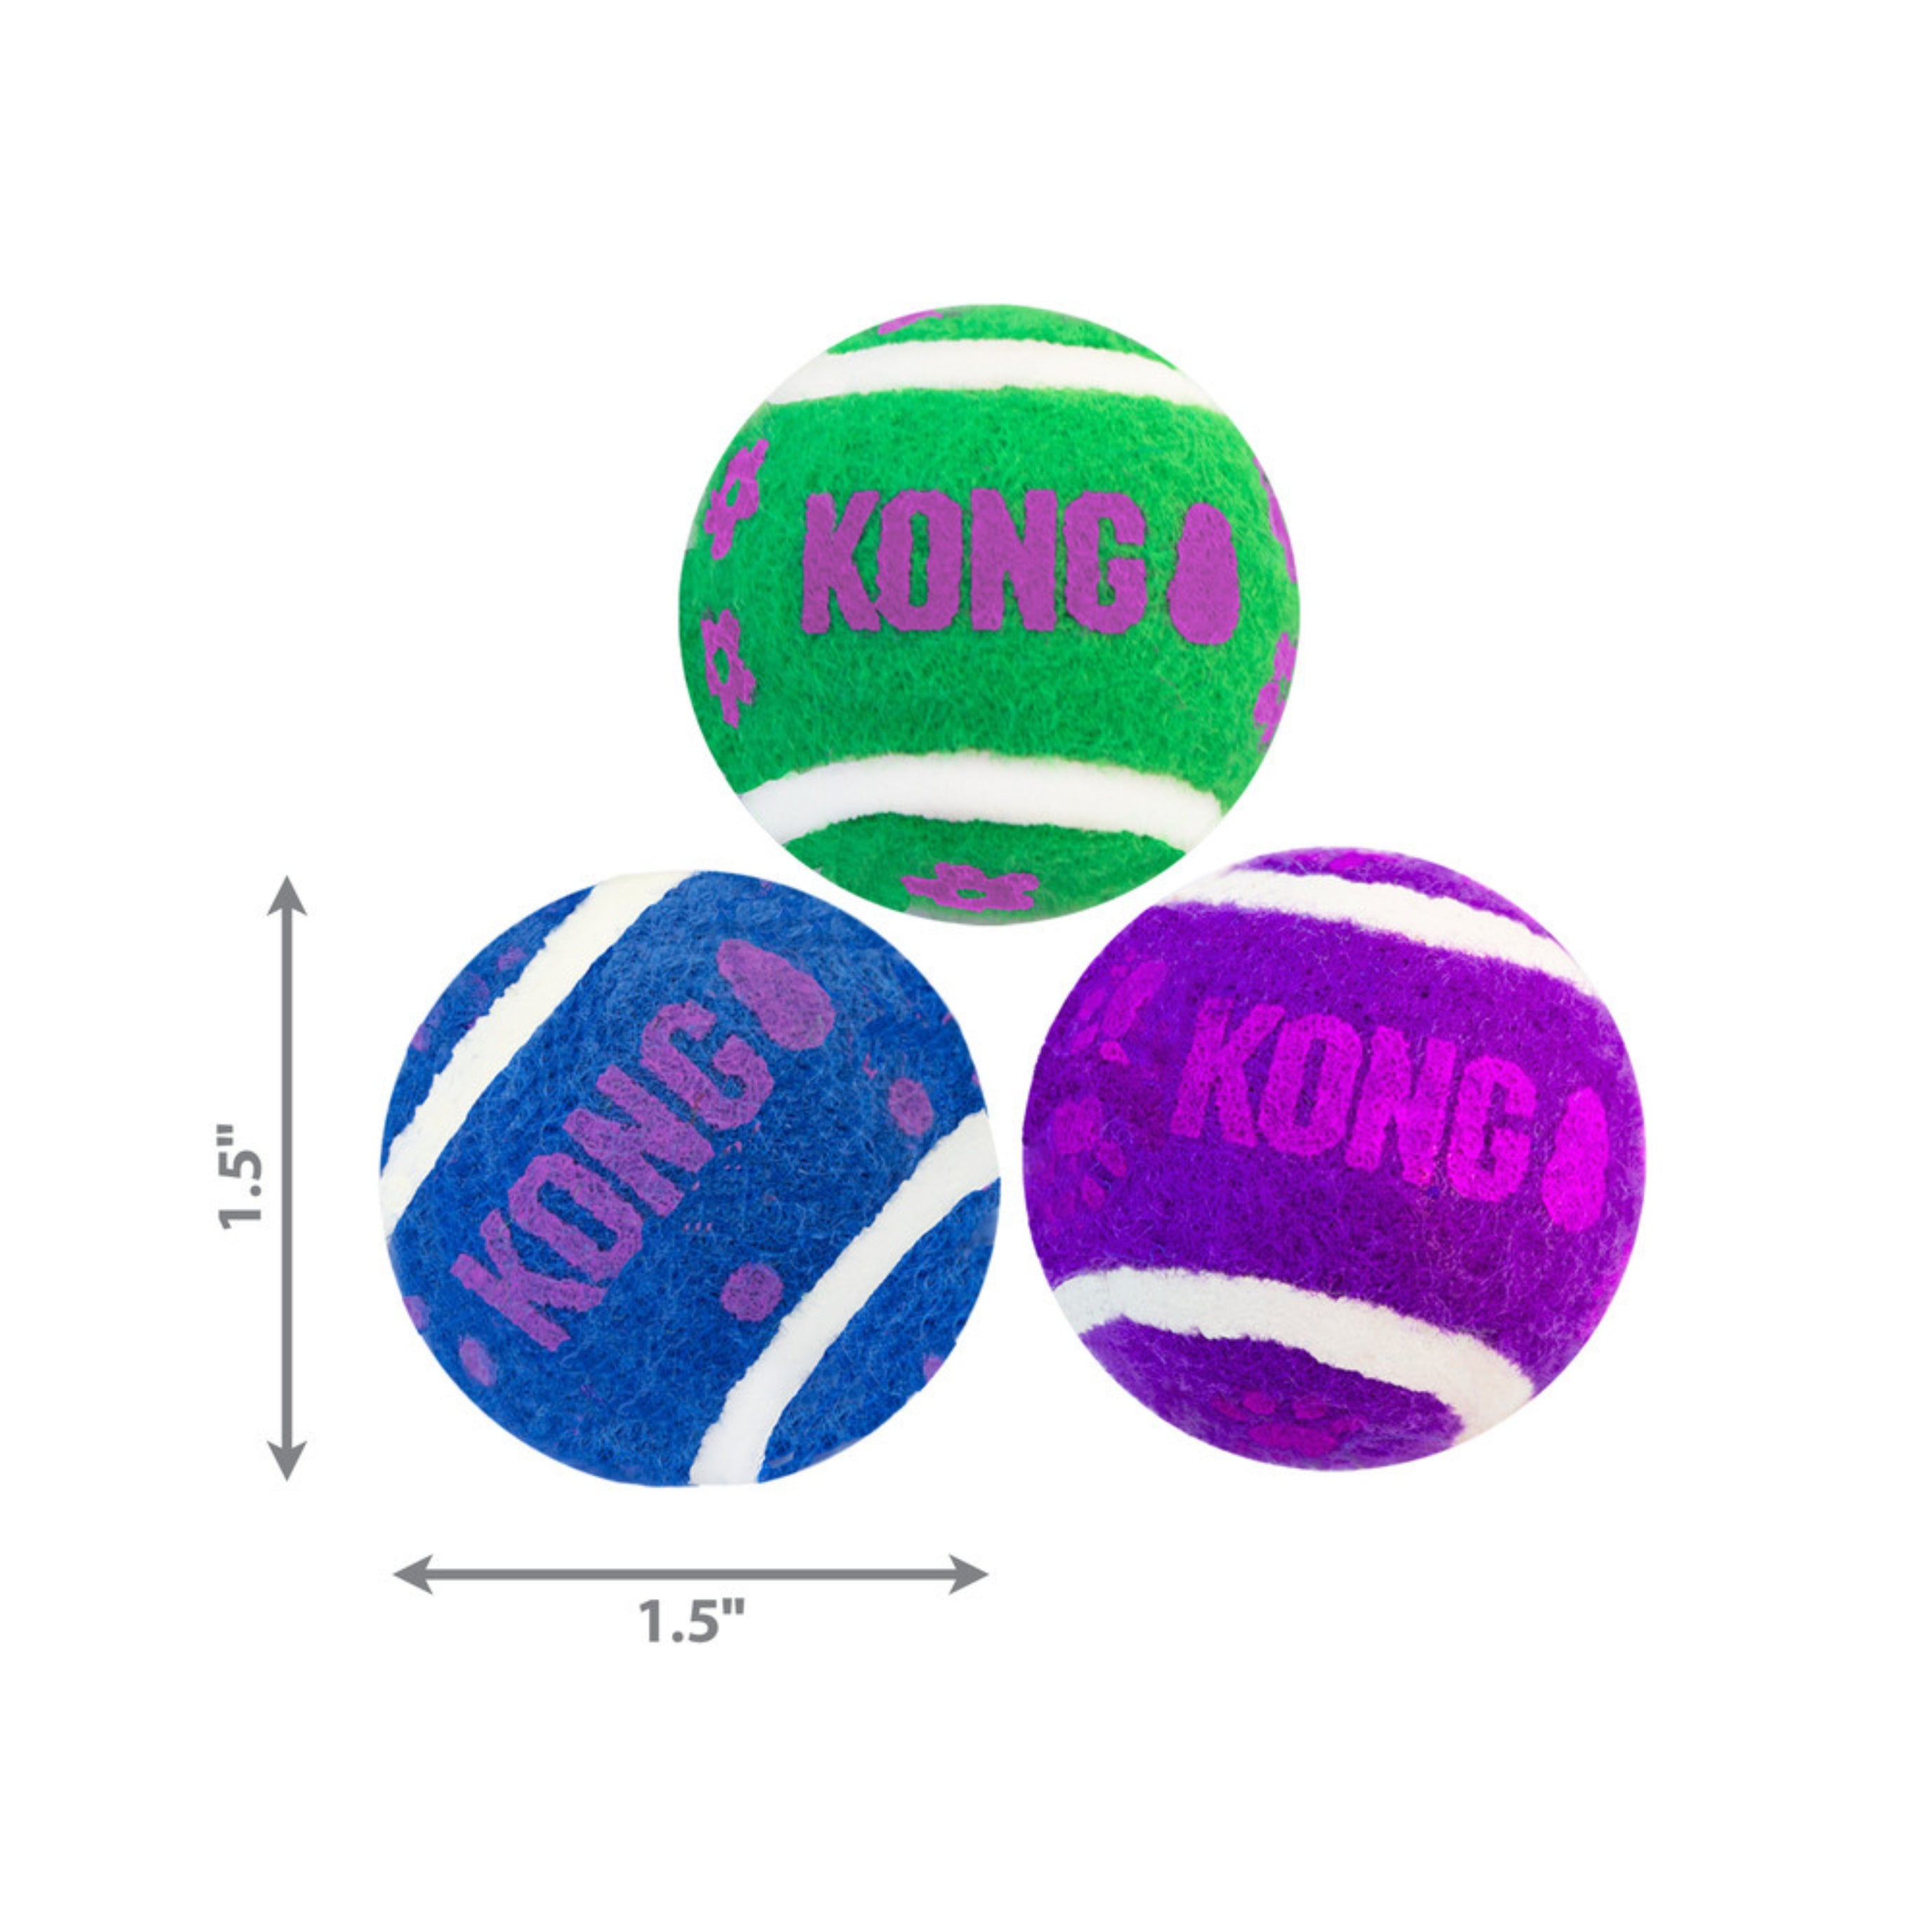 KONG Cat Tennis Balls Dimensions